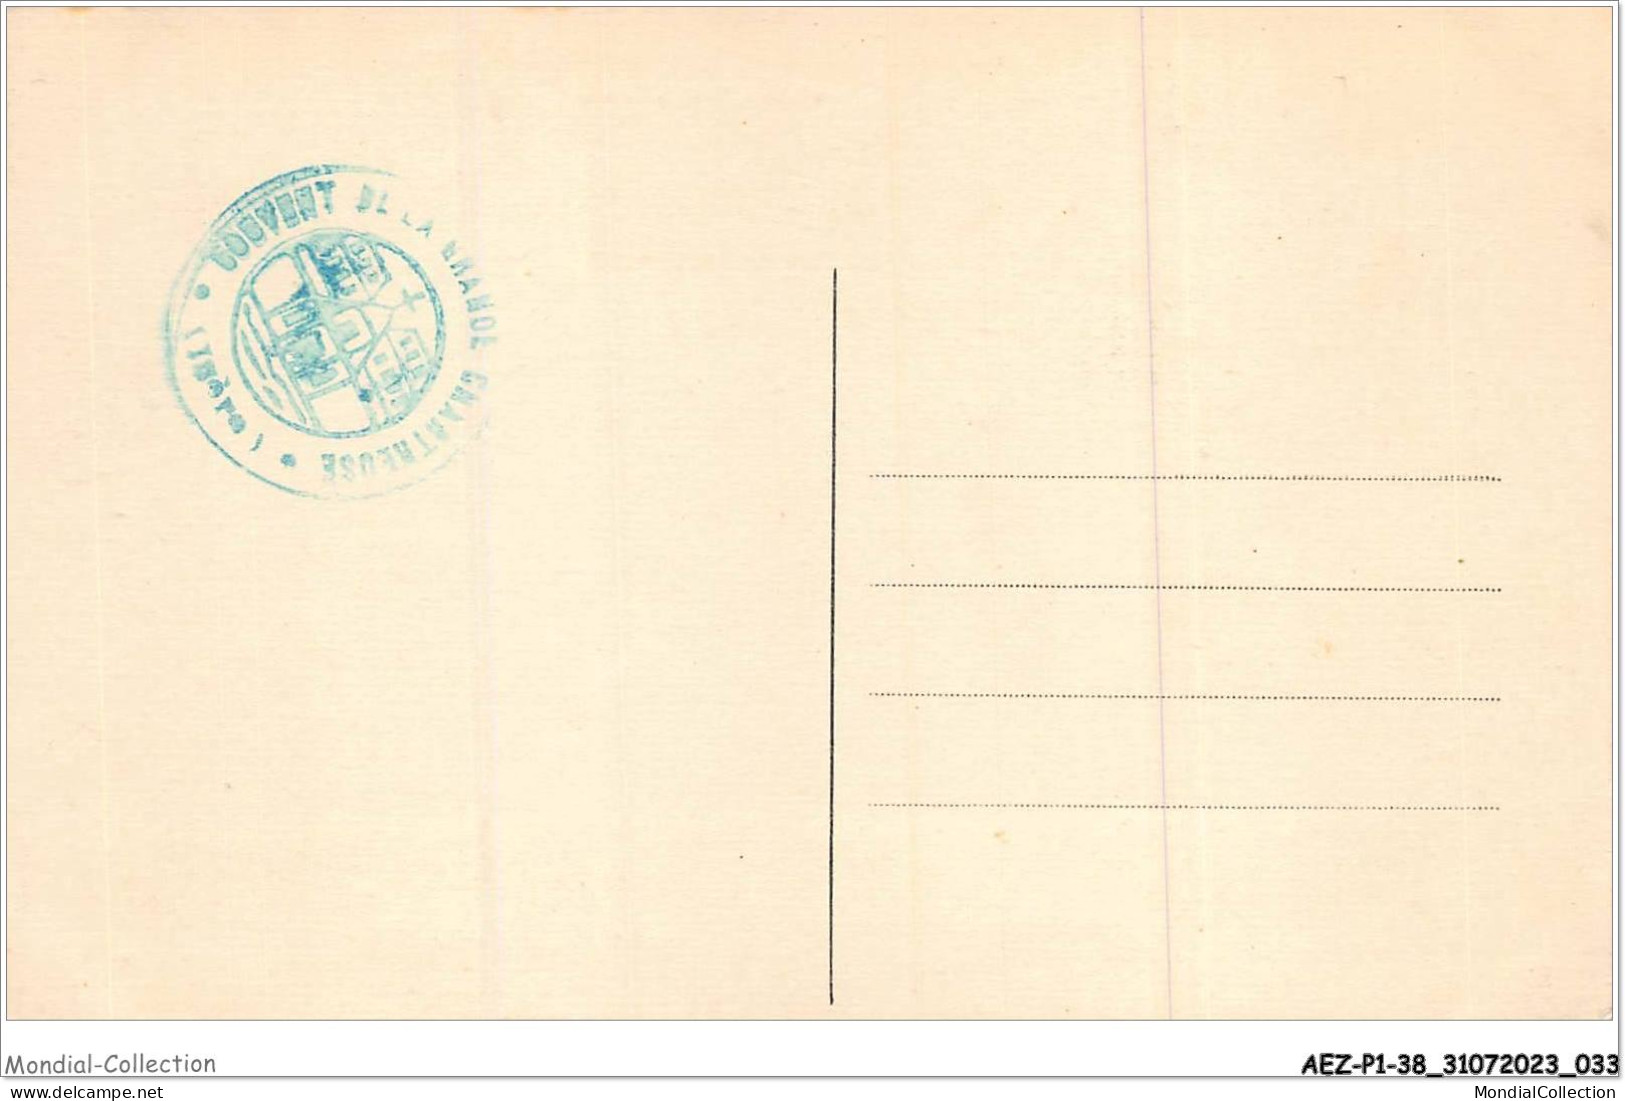 AEZP1-38-0017 - DAUPHINE - SAINT-PIERRE-DE-CHARTREUSE Et Le Chamechaude - Chartreuse